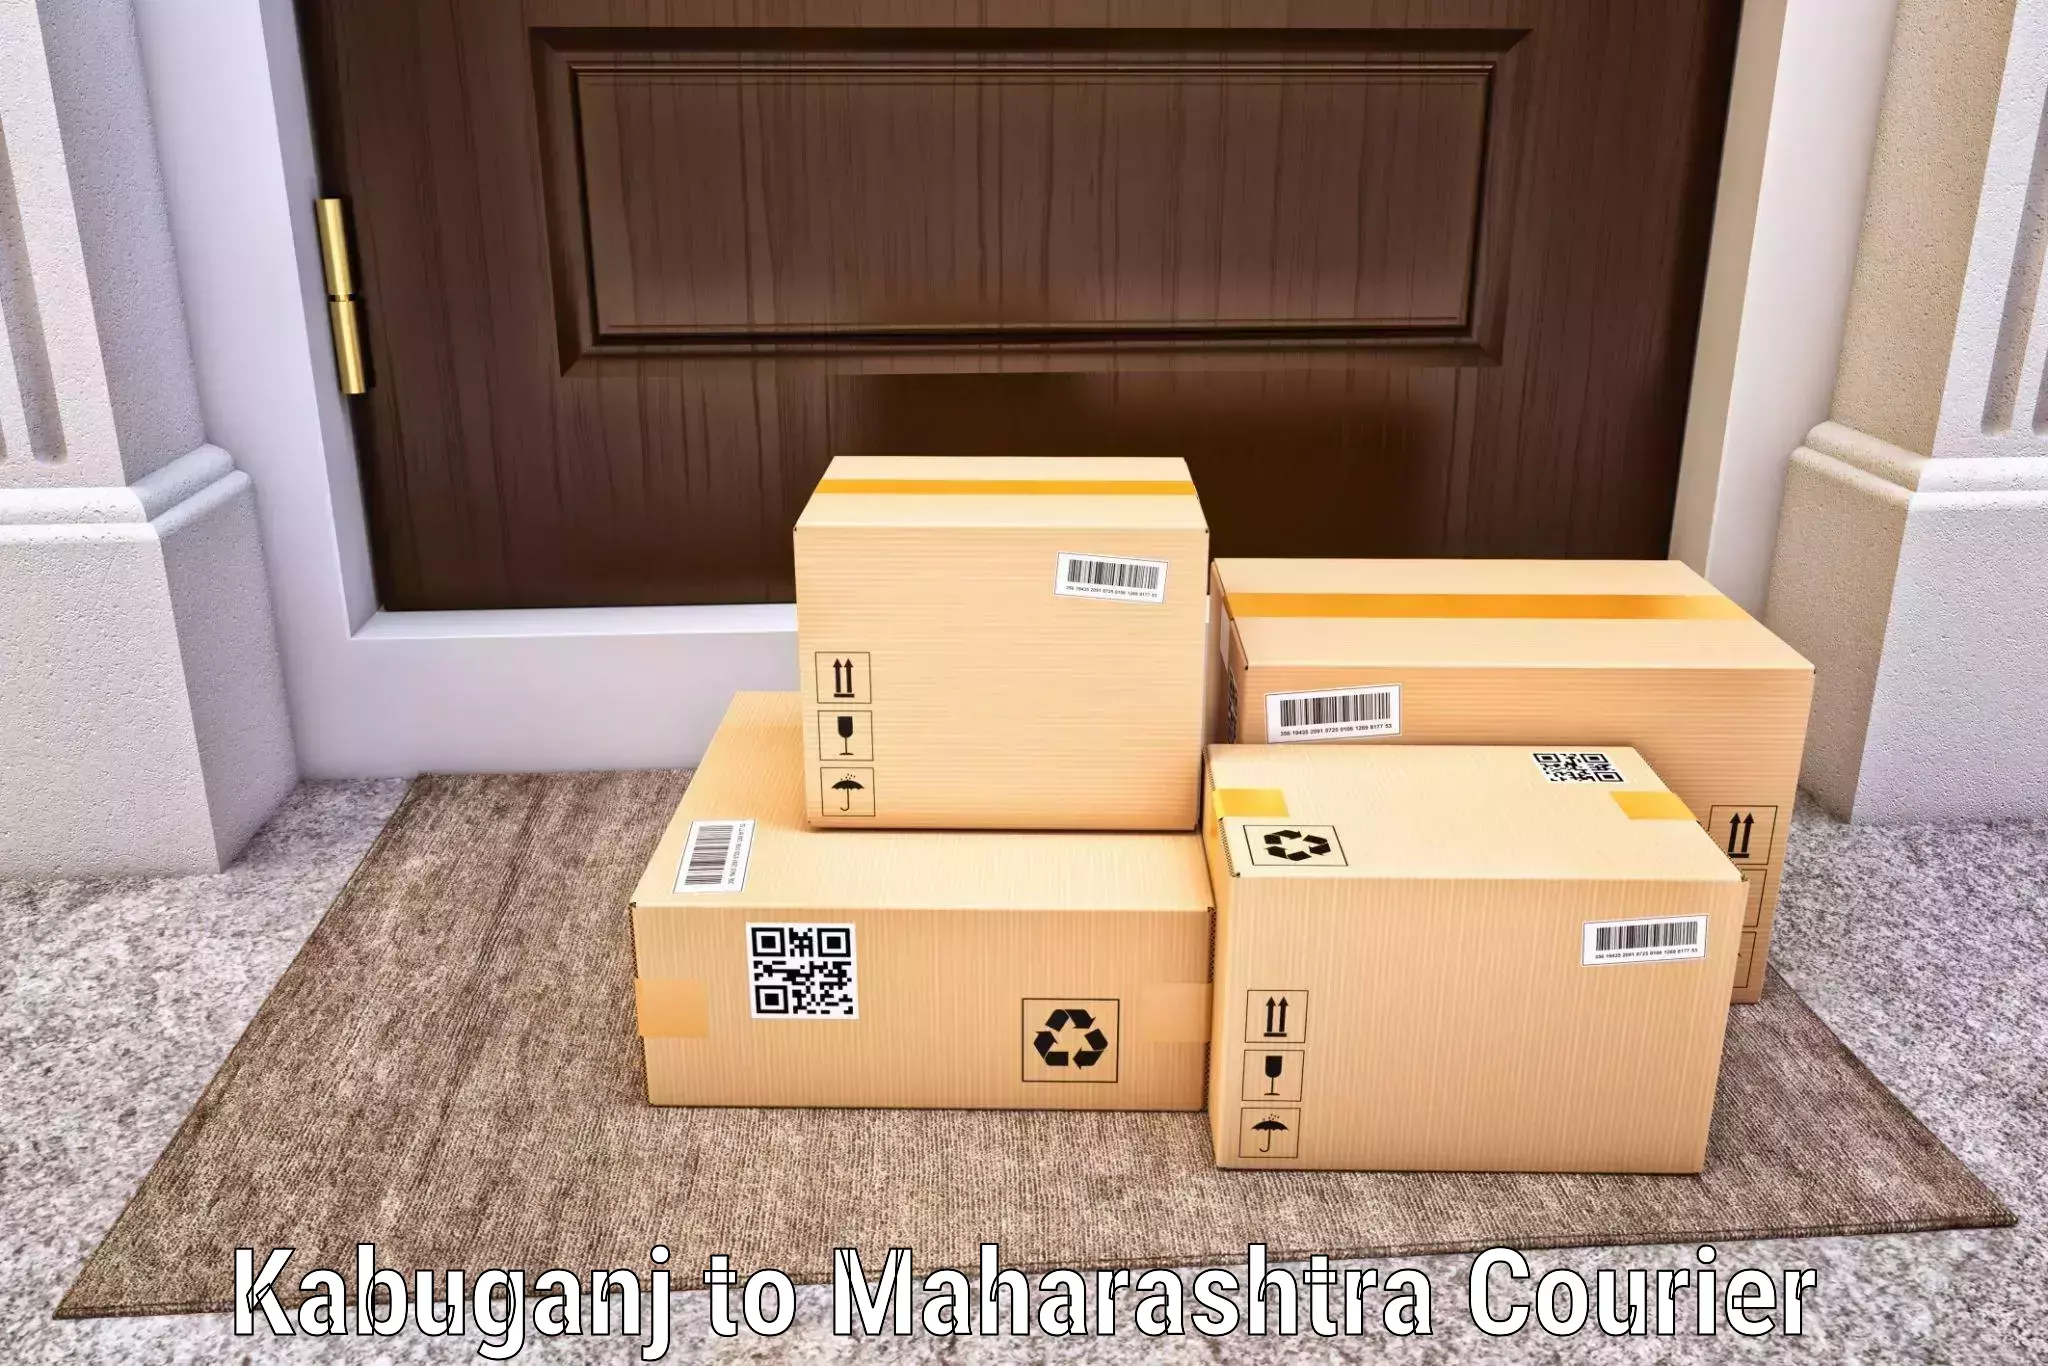 Efficient cargo handling Kabuganj to Jath